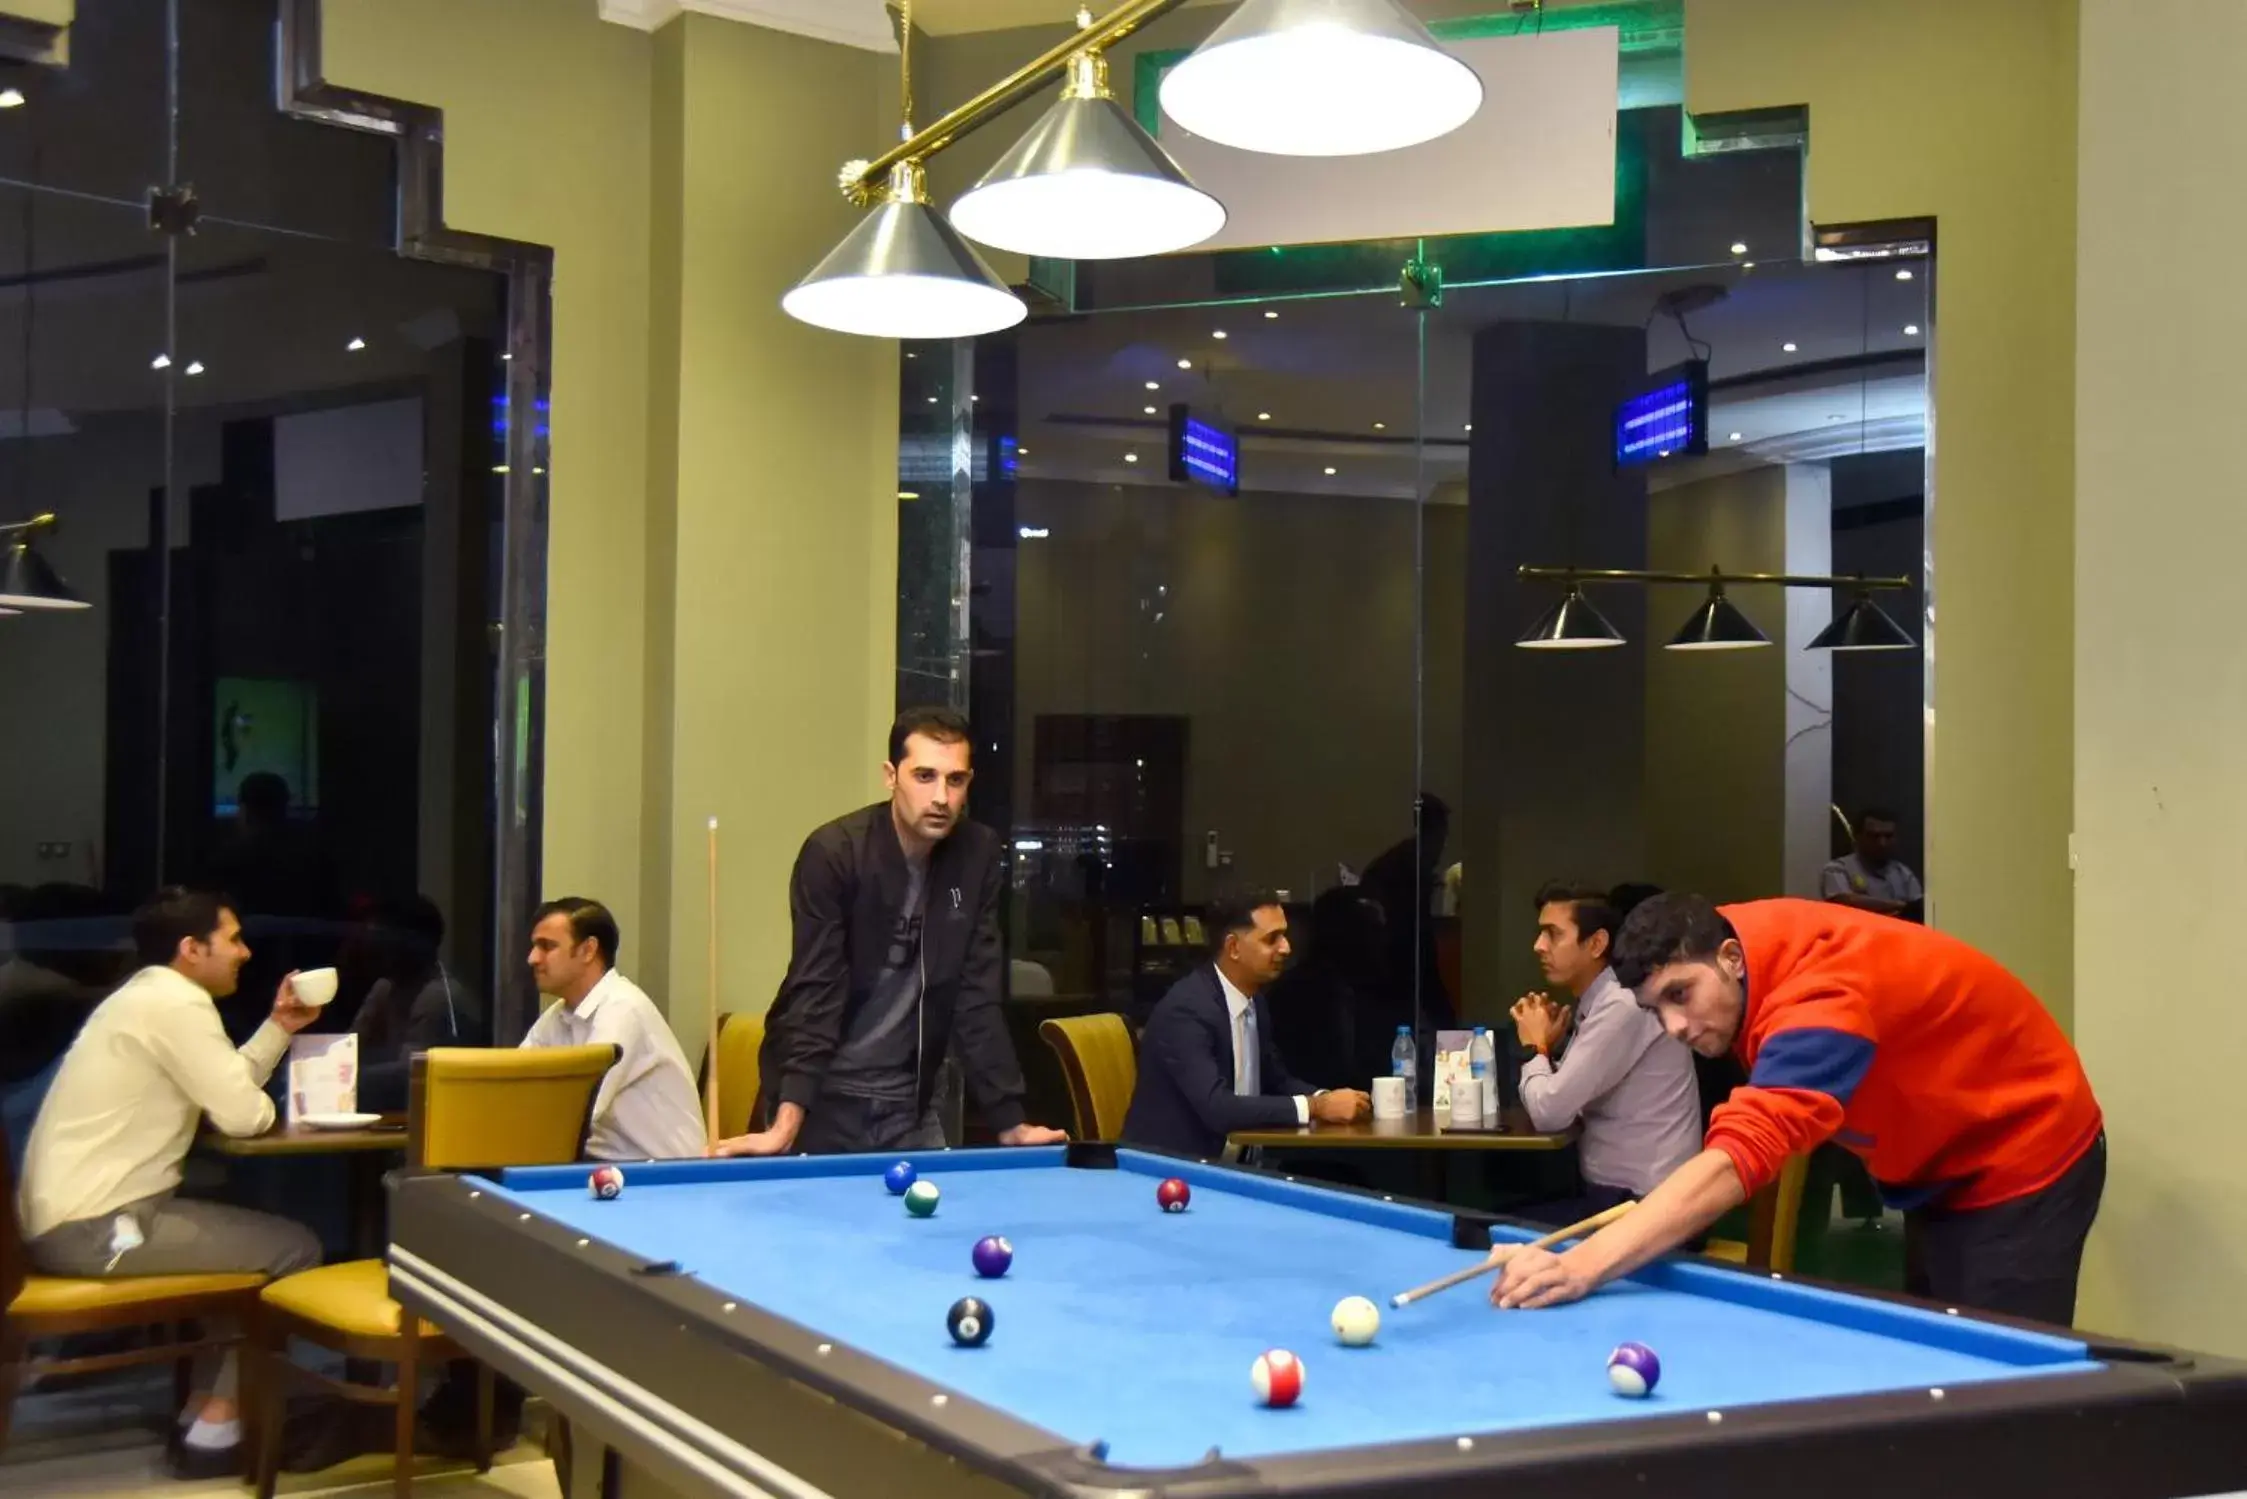 Billiard, Billiards in Emirates Stars Hotel Apartments Sharjah